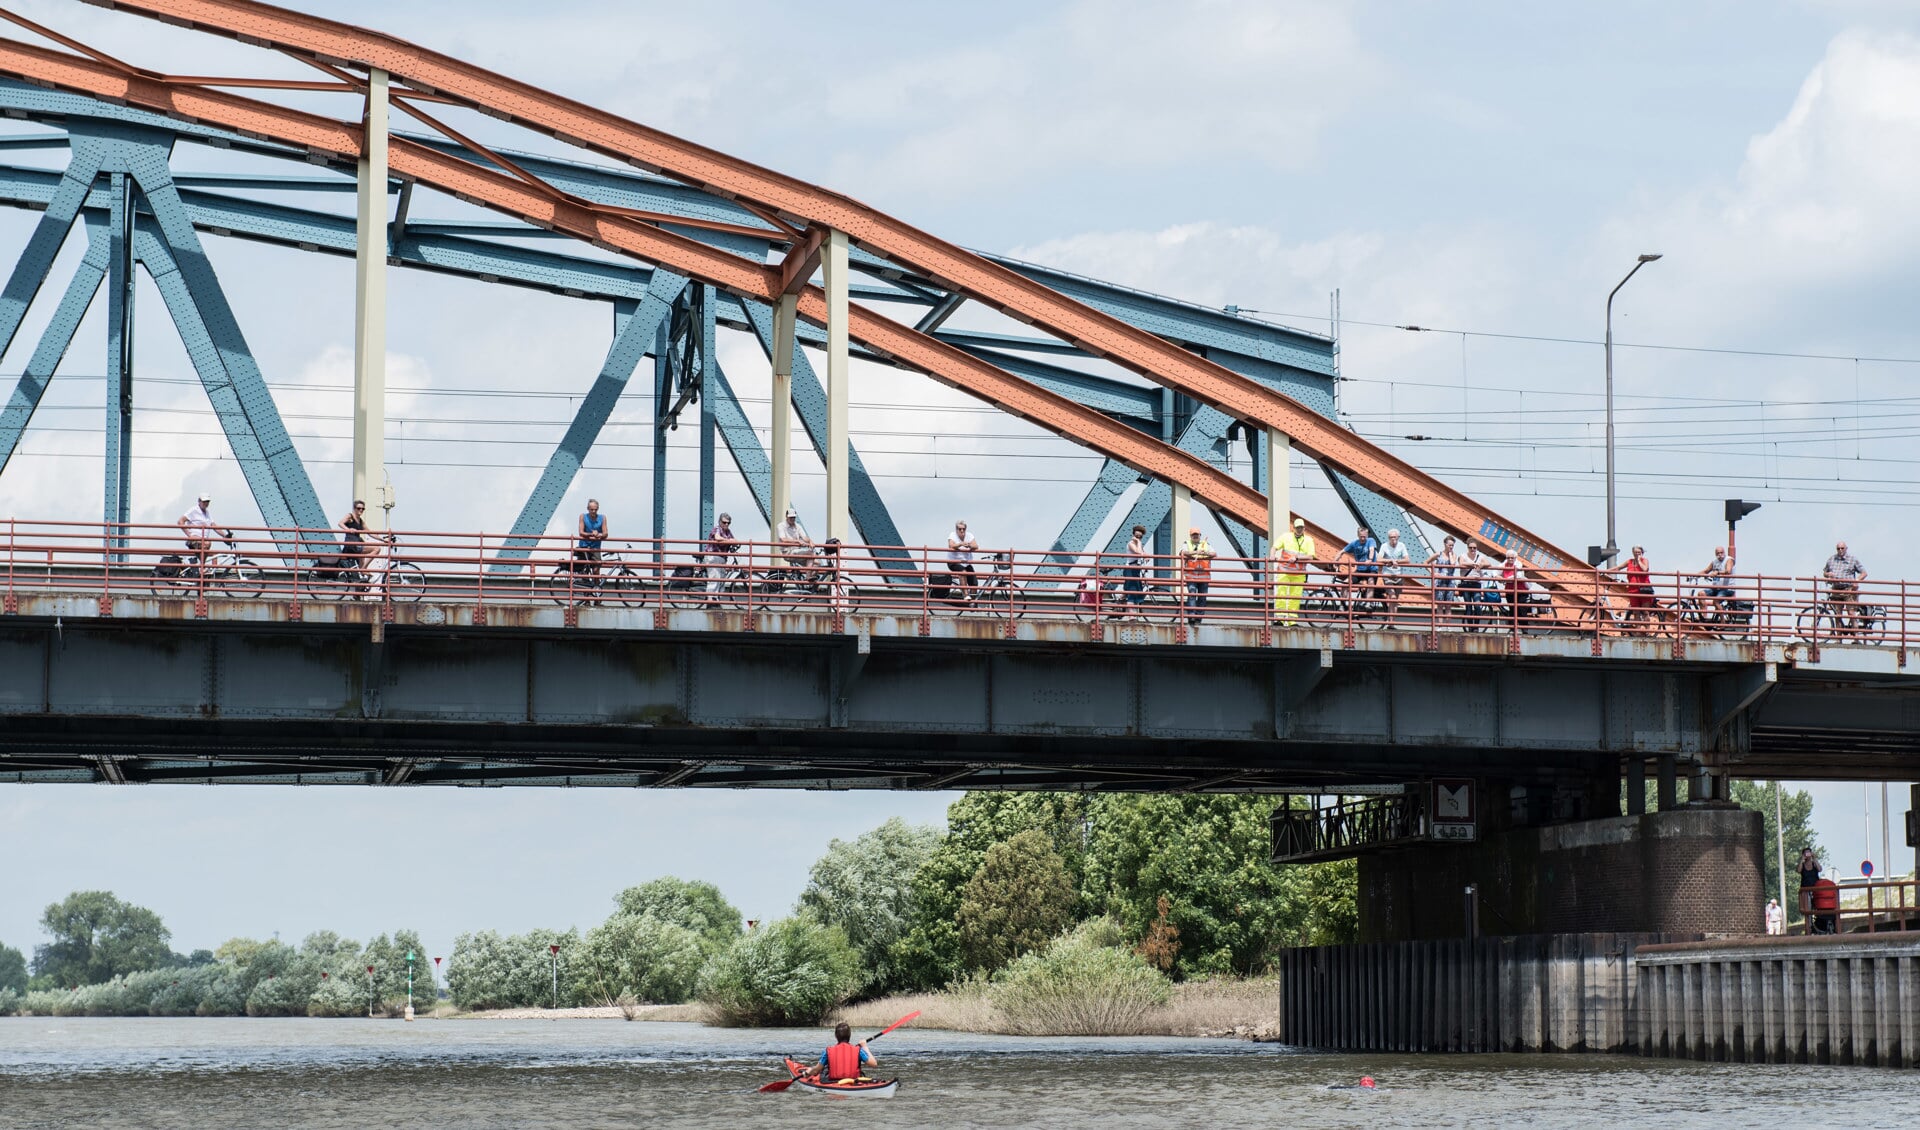 Dit jaar is het vanwege de werkzaamheden aan de Oude IJsselbrug niet mogelijk de brug te passeren. Foto: Achterhoekfoto.nl/Dennis van der Toorn Vrijthoff